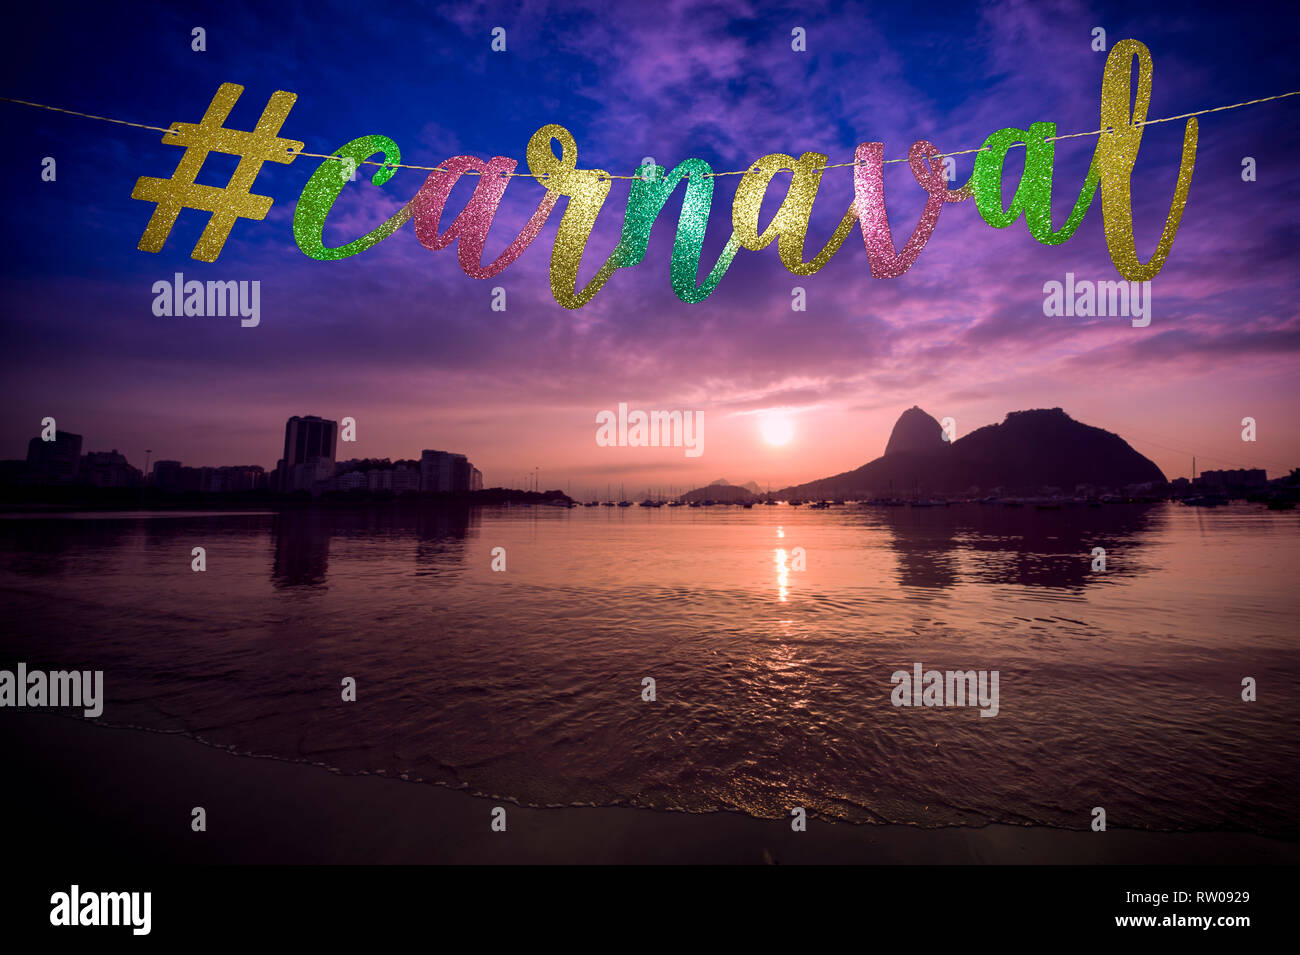 Karneval Nachricht in eleganten farbigen gold Script mit einer modernen sozialen Medien hashtag aufgereiht an Sonnenaufgang am Zuckerhut in Rio de Janeiro, Brasilien Stockfoto